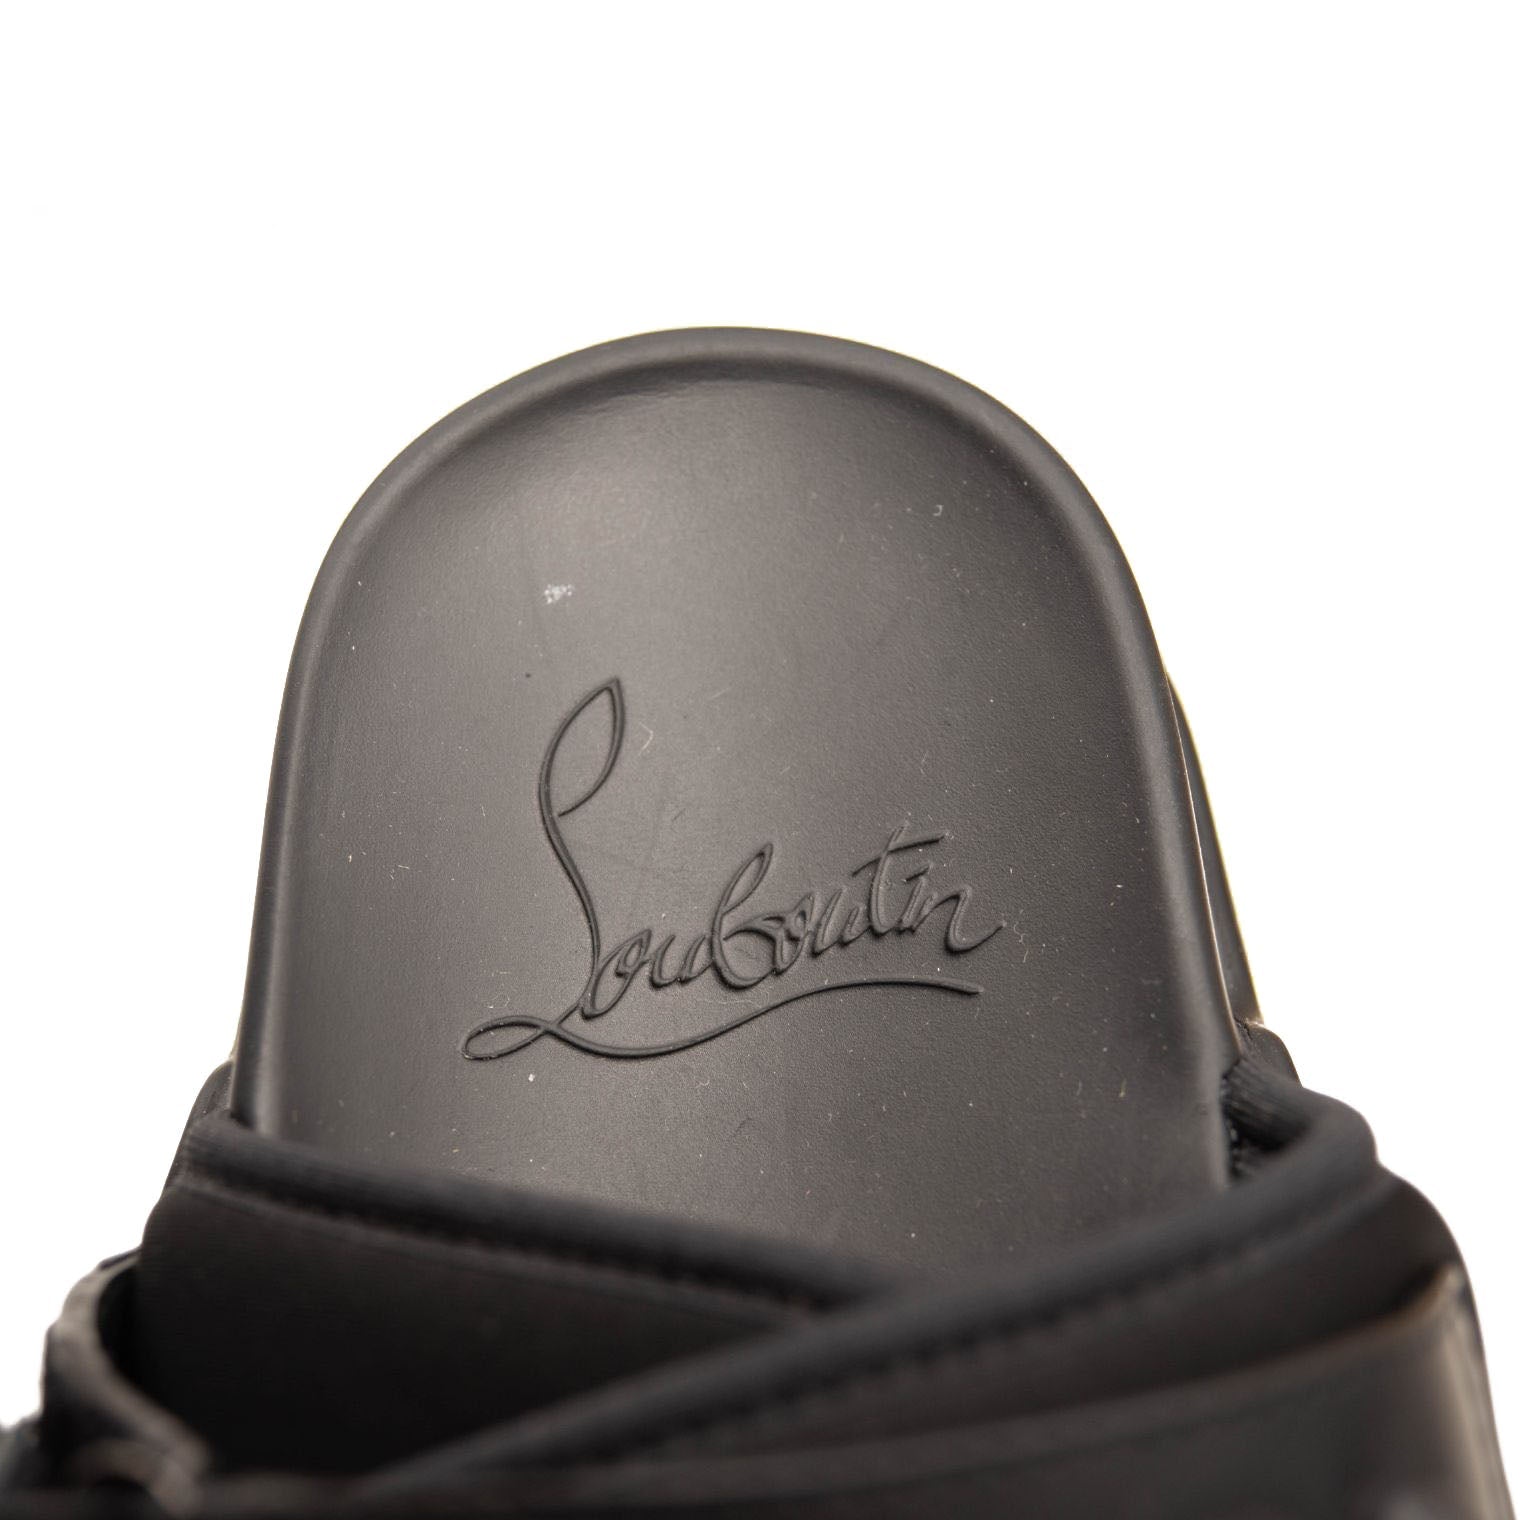 Spiked Louis Vuitton  Heels, Christian louboutin, Studded heels